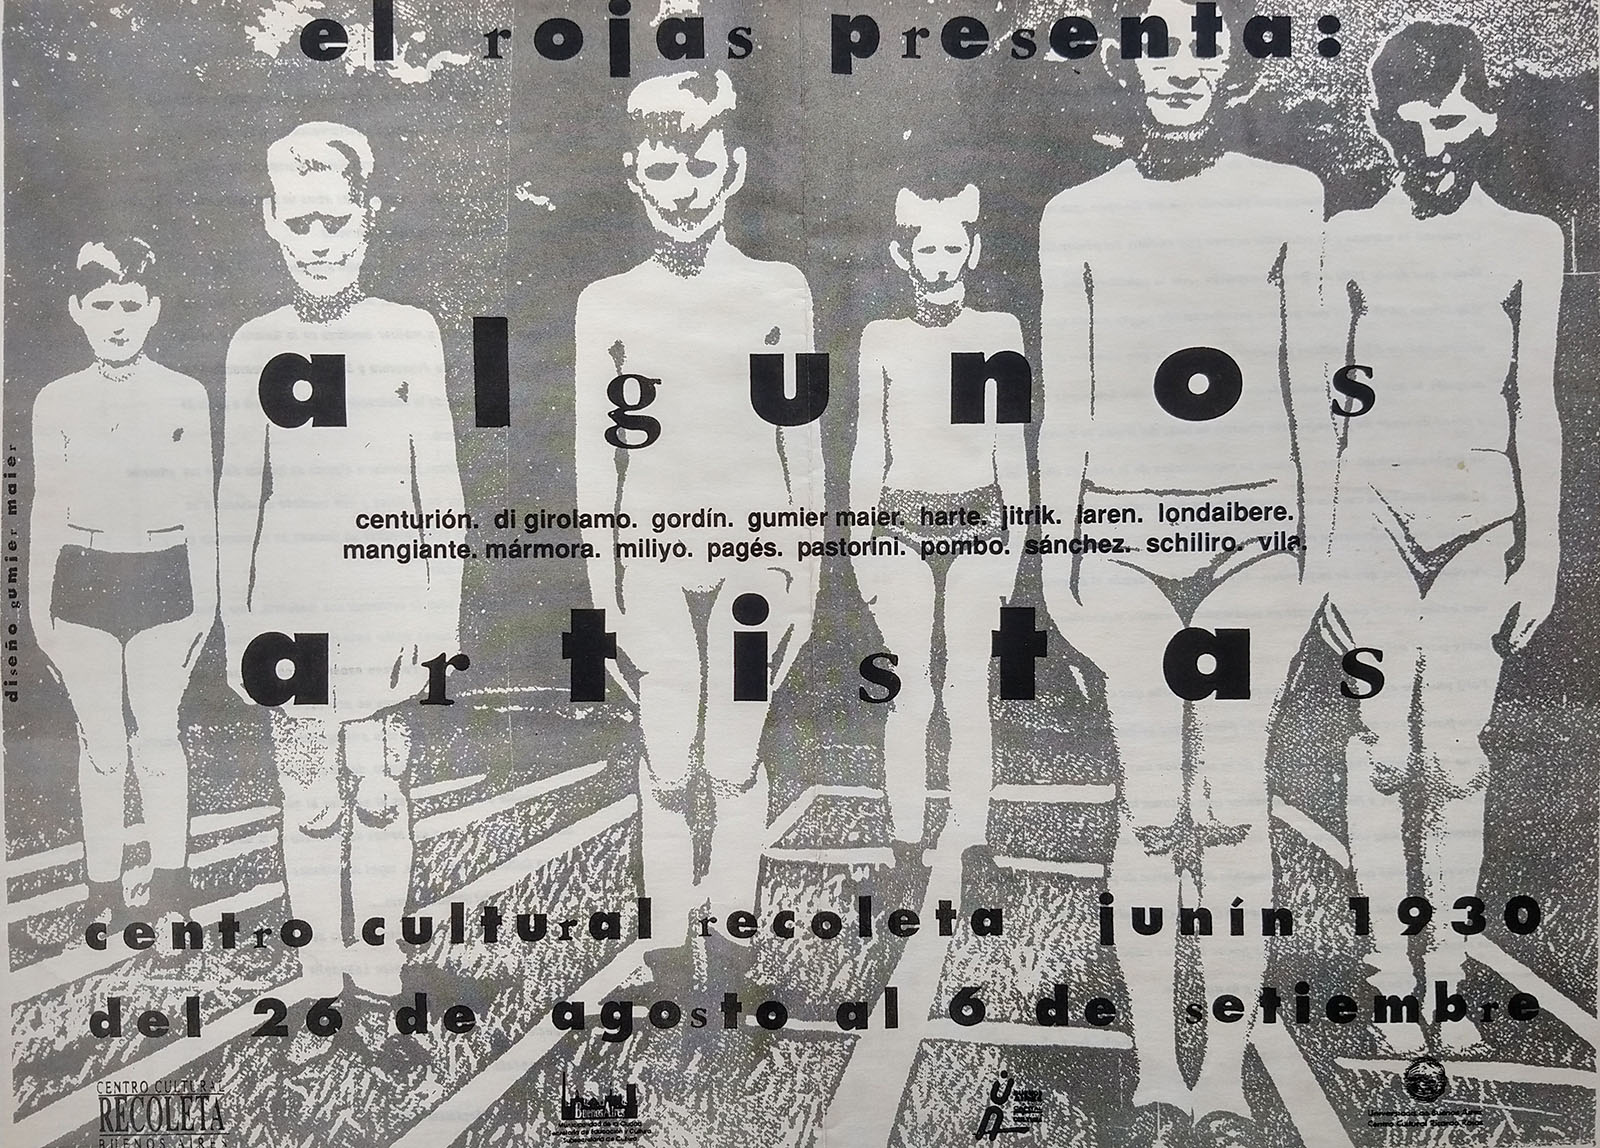 Afiche de la exposición El Rojas presenta Algunos Artistas, Centro Cultural Recoleta, 1992. Diseño Jorge Gumier Maier. Archivo Magdalena Jitrik, Buenos Aires.